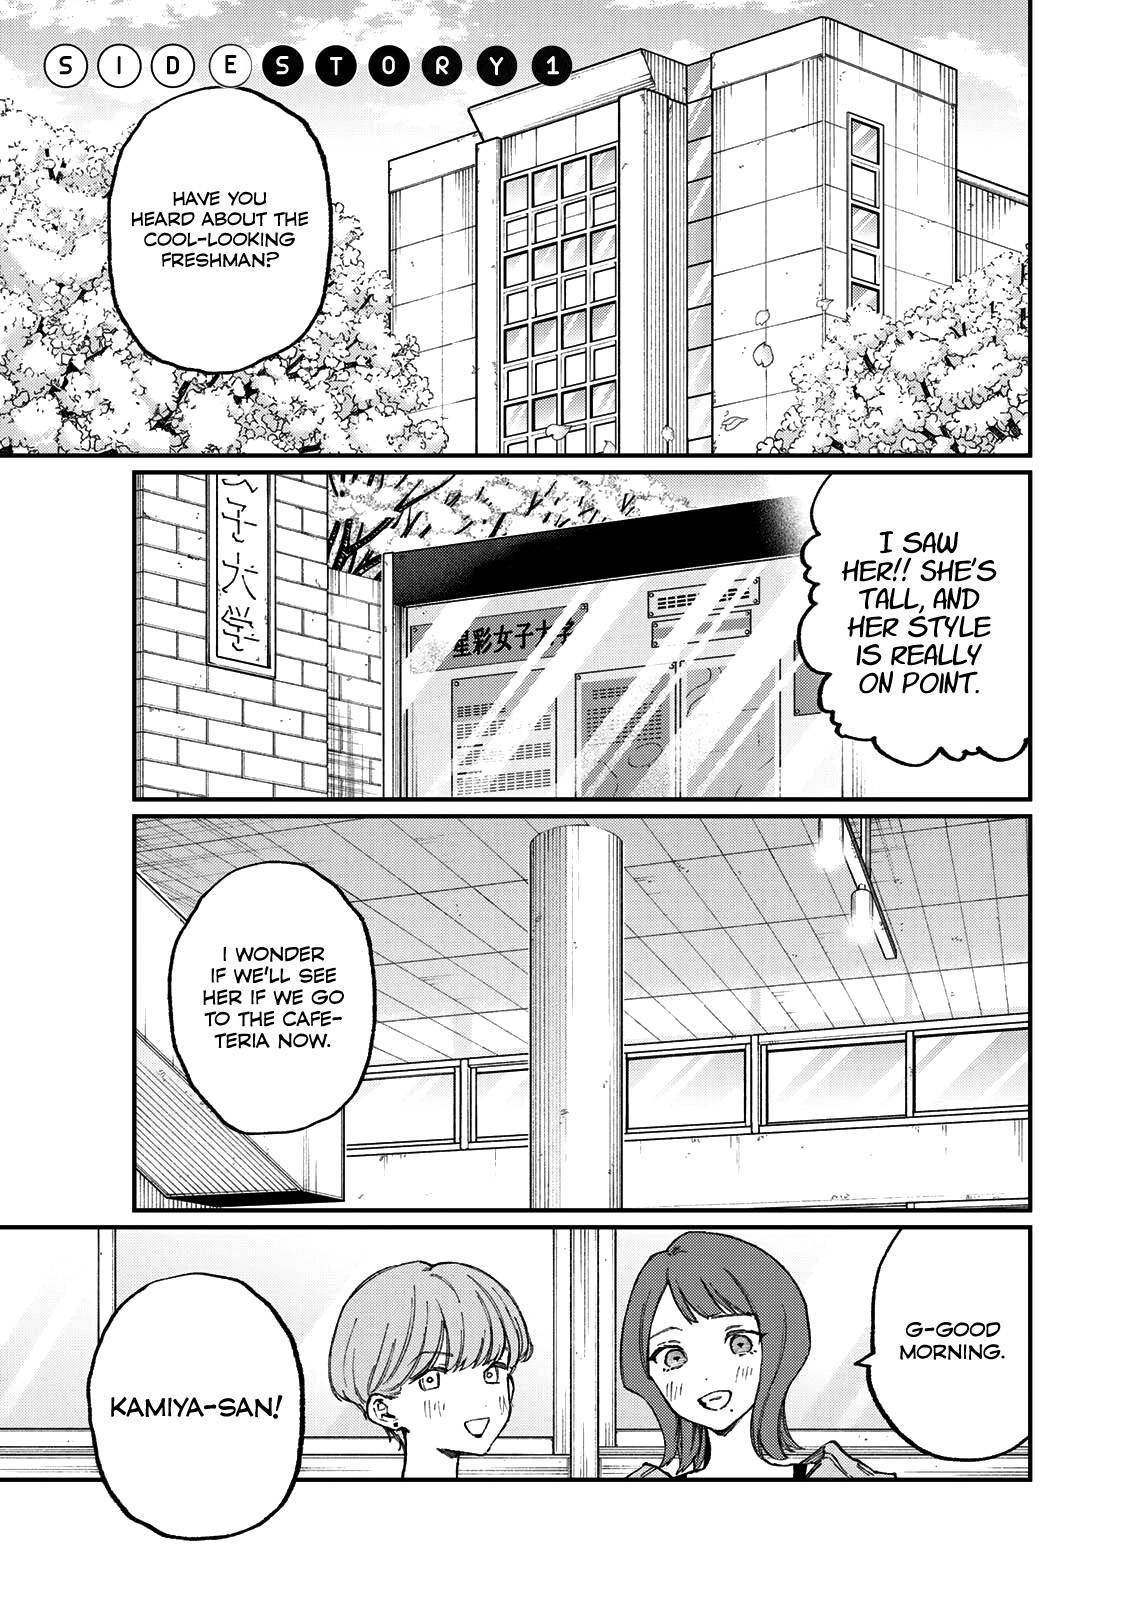 Shikimori's Not Just A Cutie - chapter 178.1 - #2